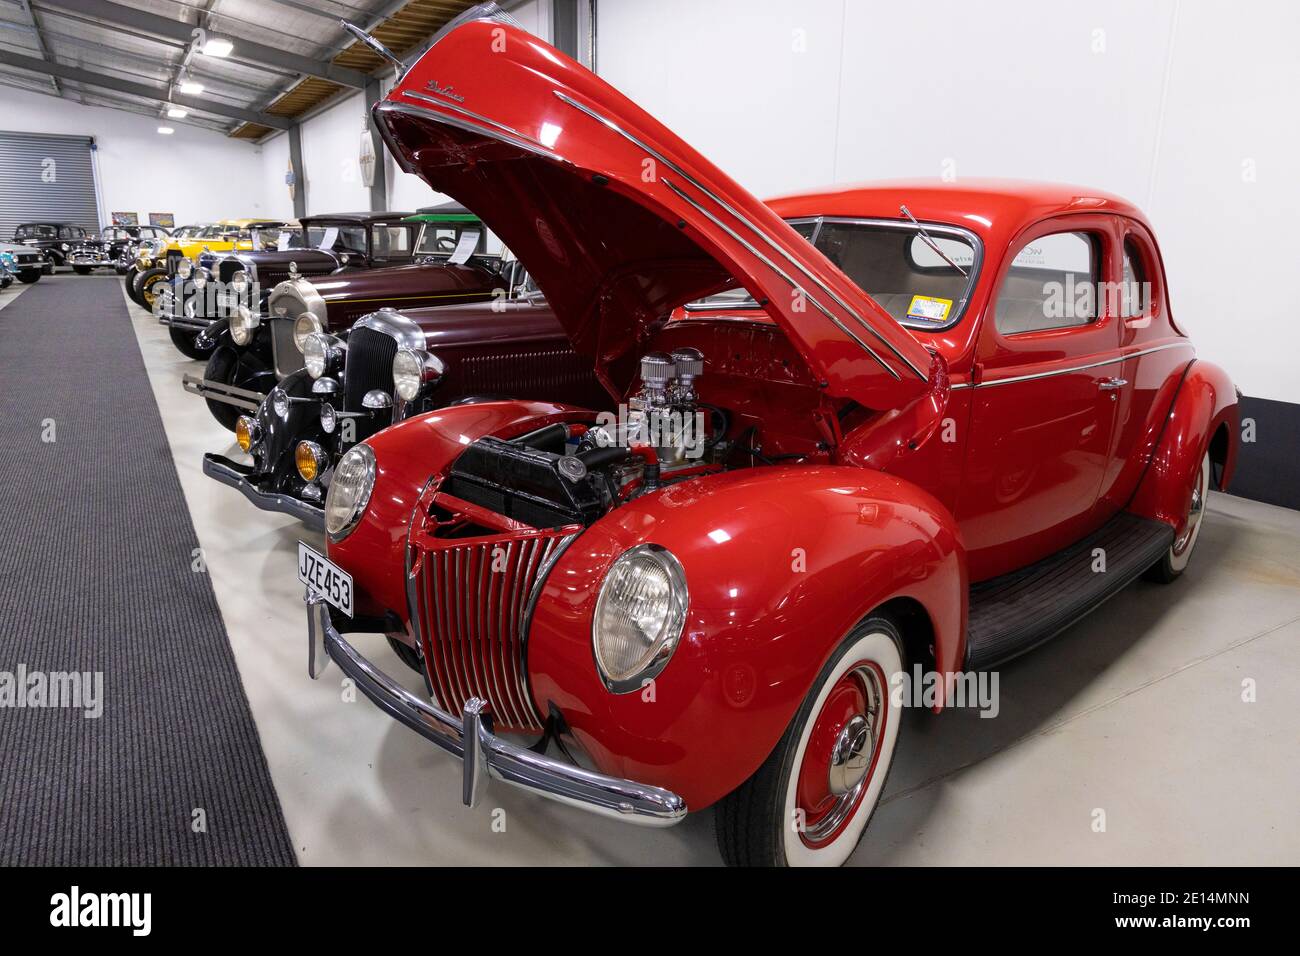 Nelson Classic car Museum, Île du Sud, Nouvelle-Zélande. Une collection de véhicules automobiles classiques, vintage et rares. Coupé V8 de luxe Ford 1939. Banque D'Images